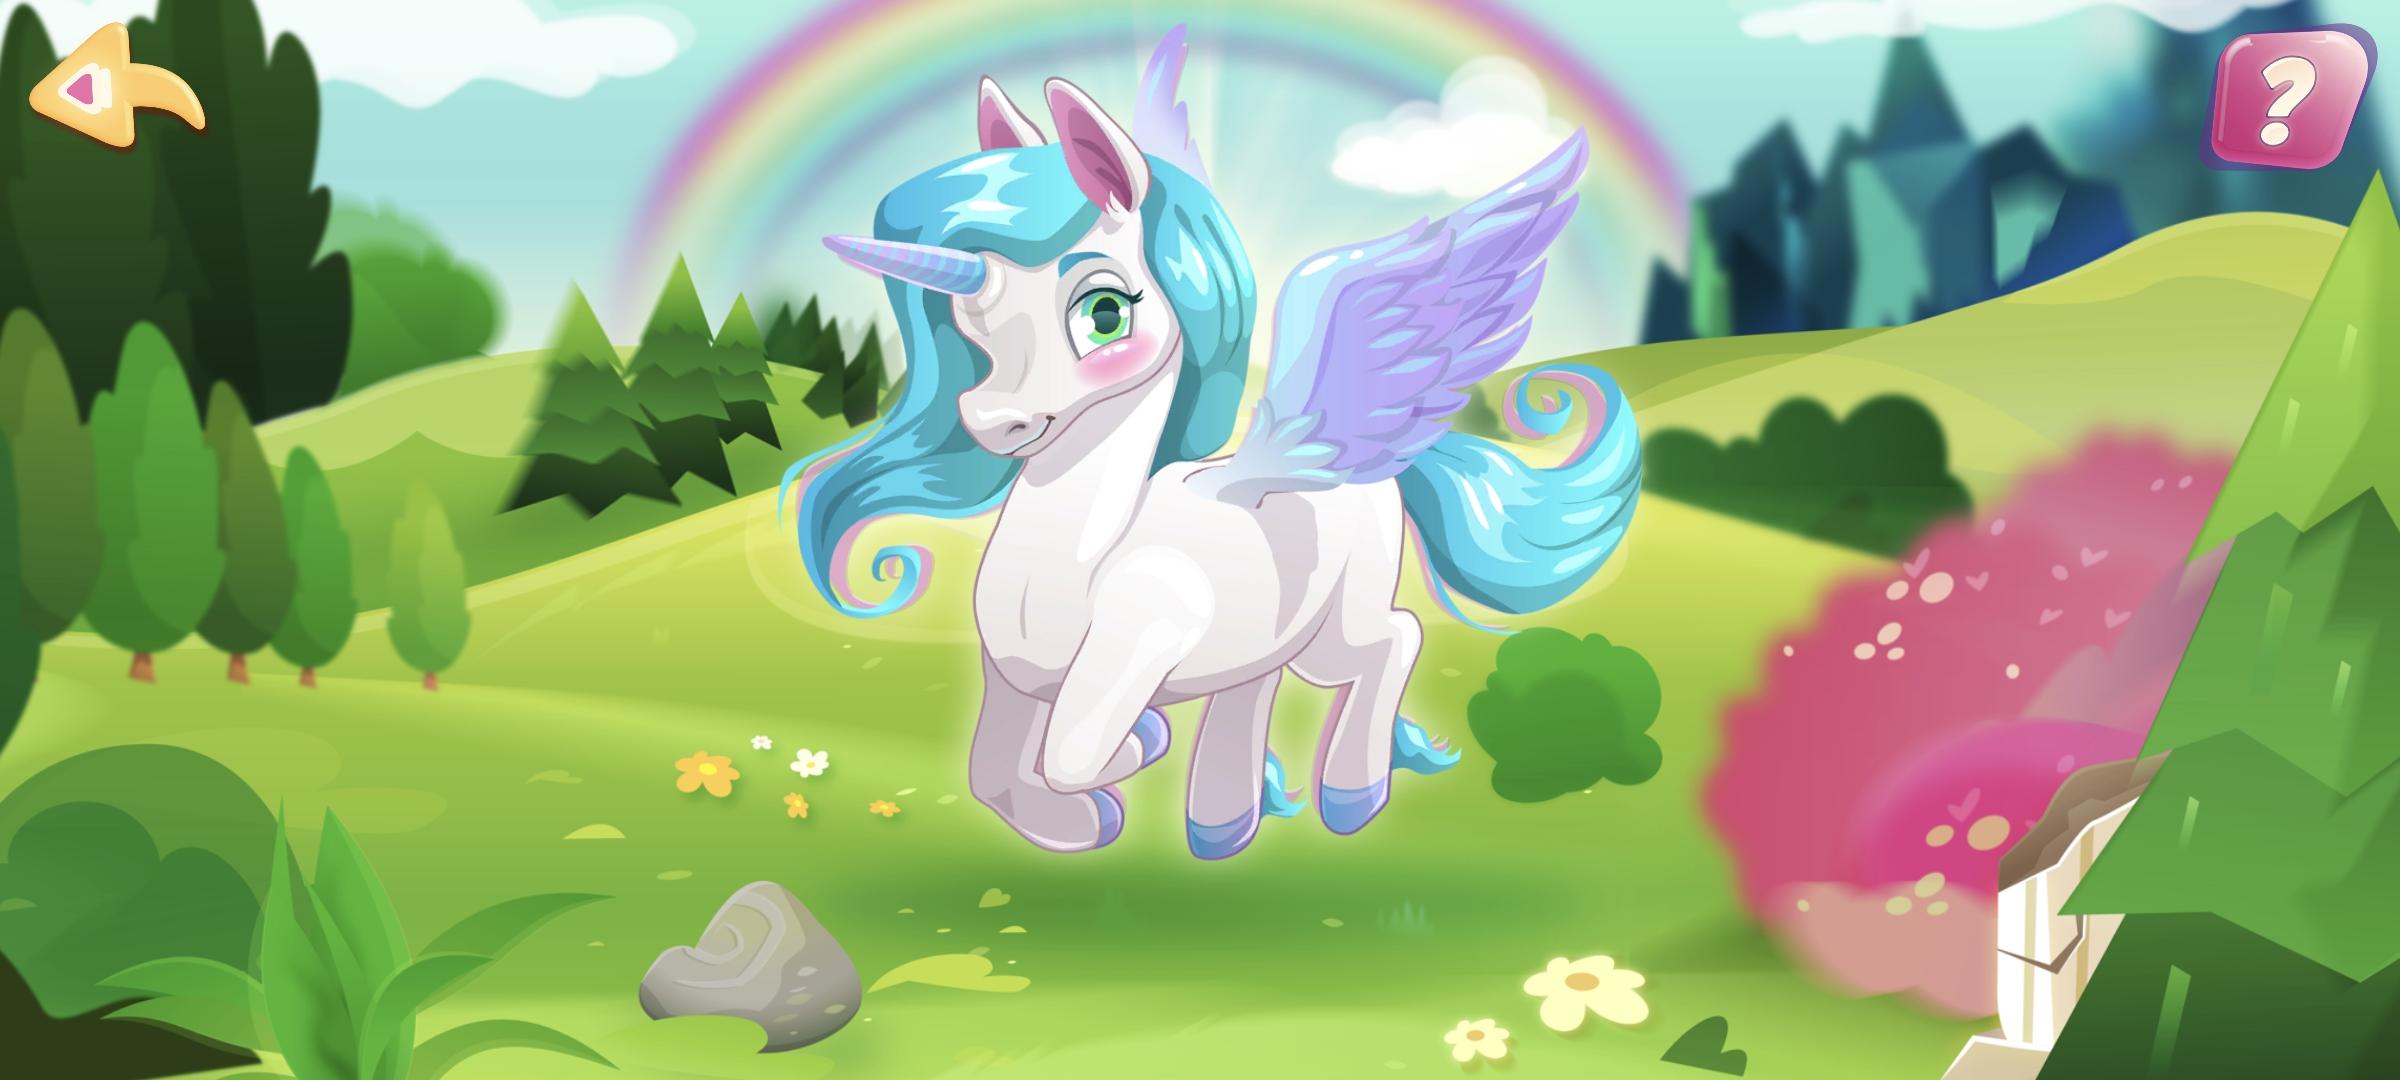 Pony magic mod. Пони игра пазлы. Головоломка пони. Первый день весны my little Pony. MLP андроид.